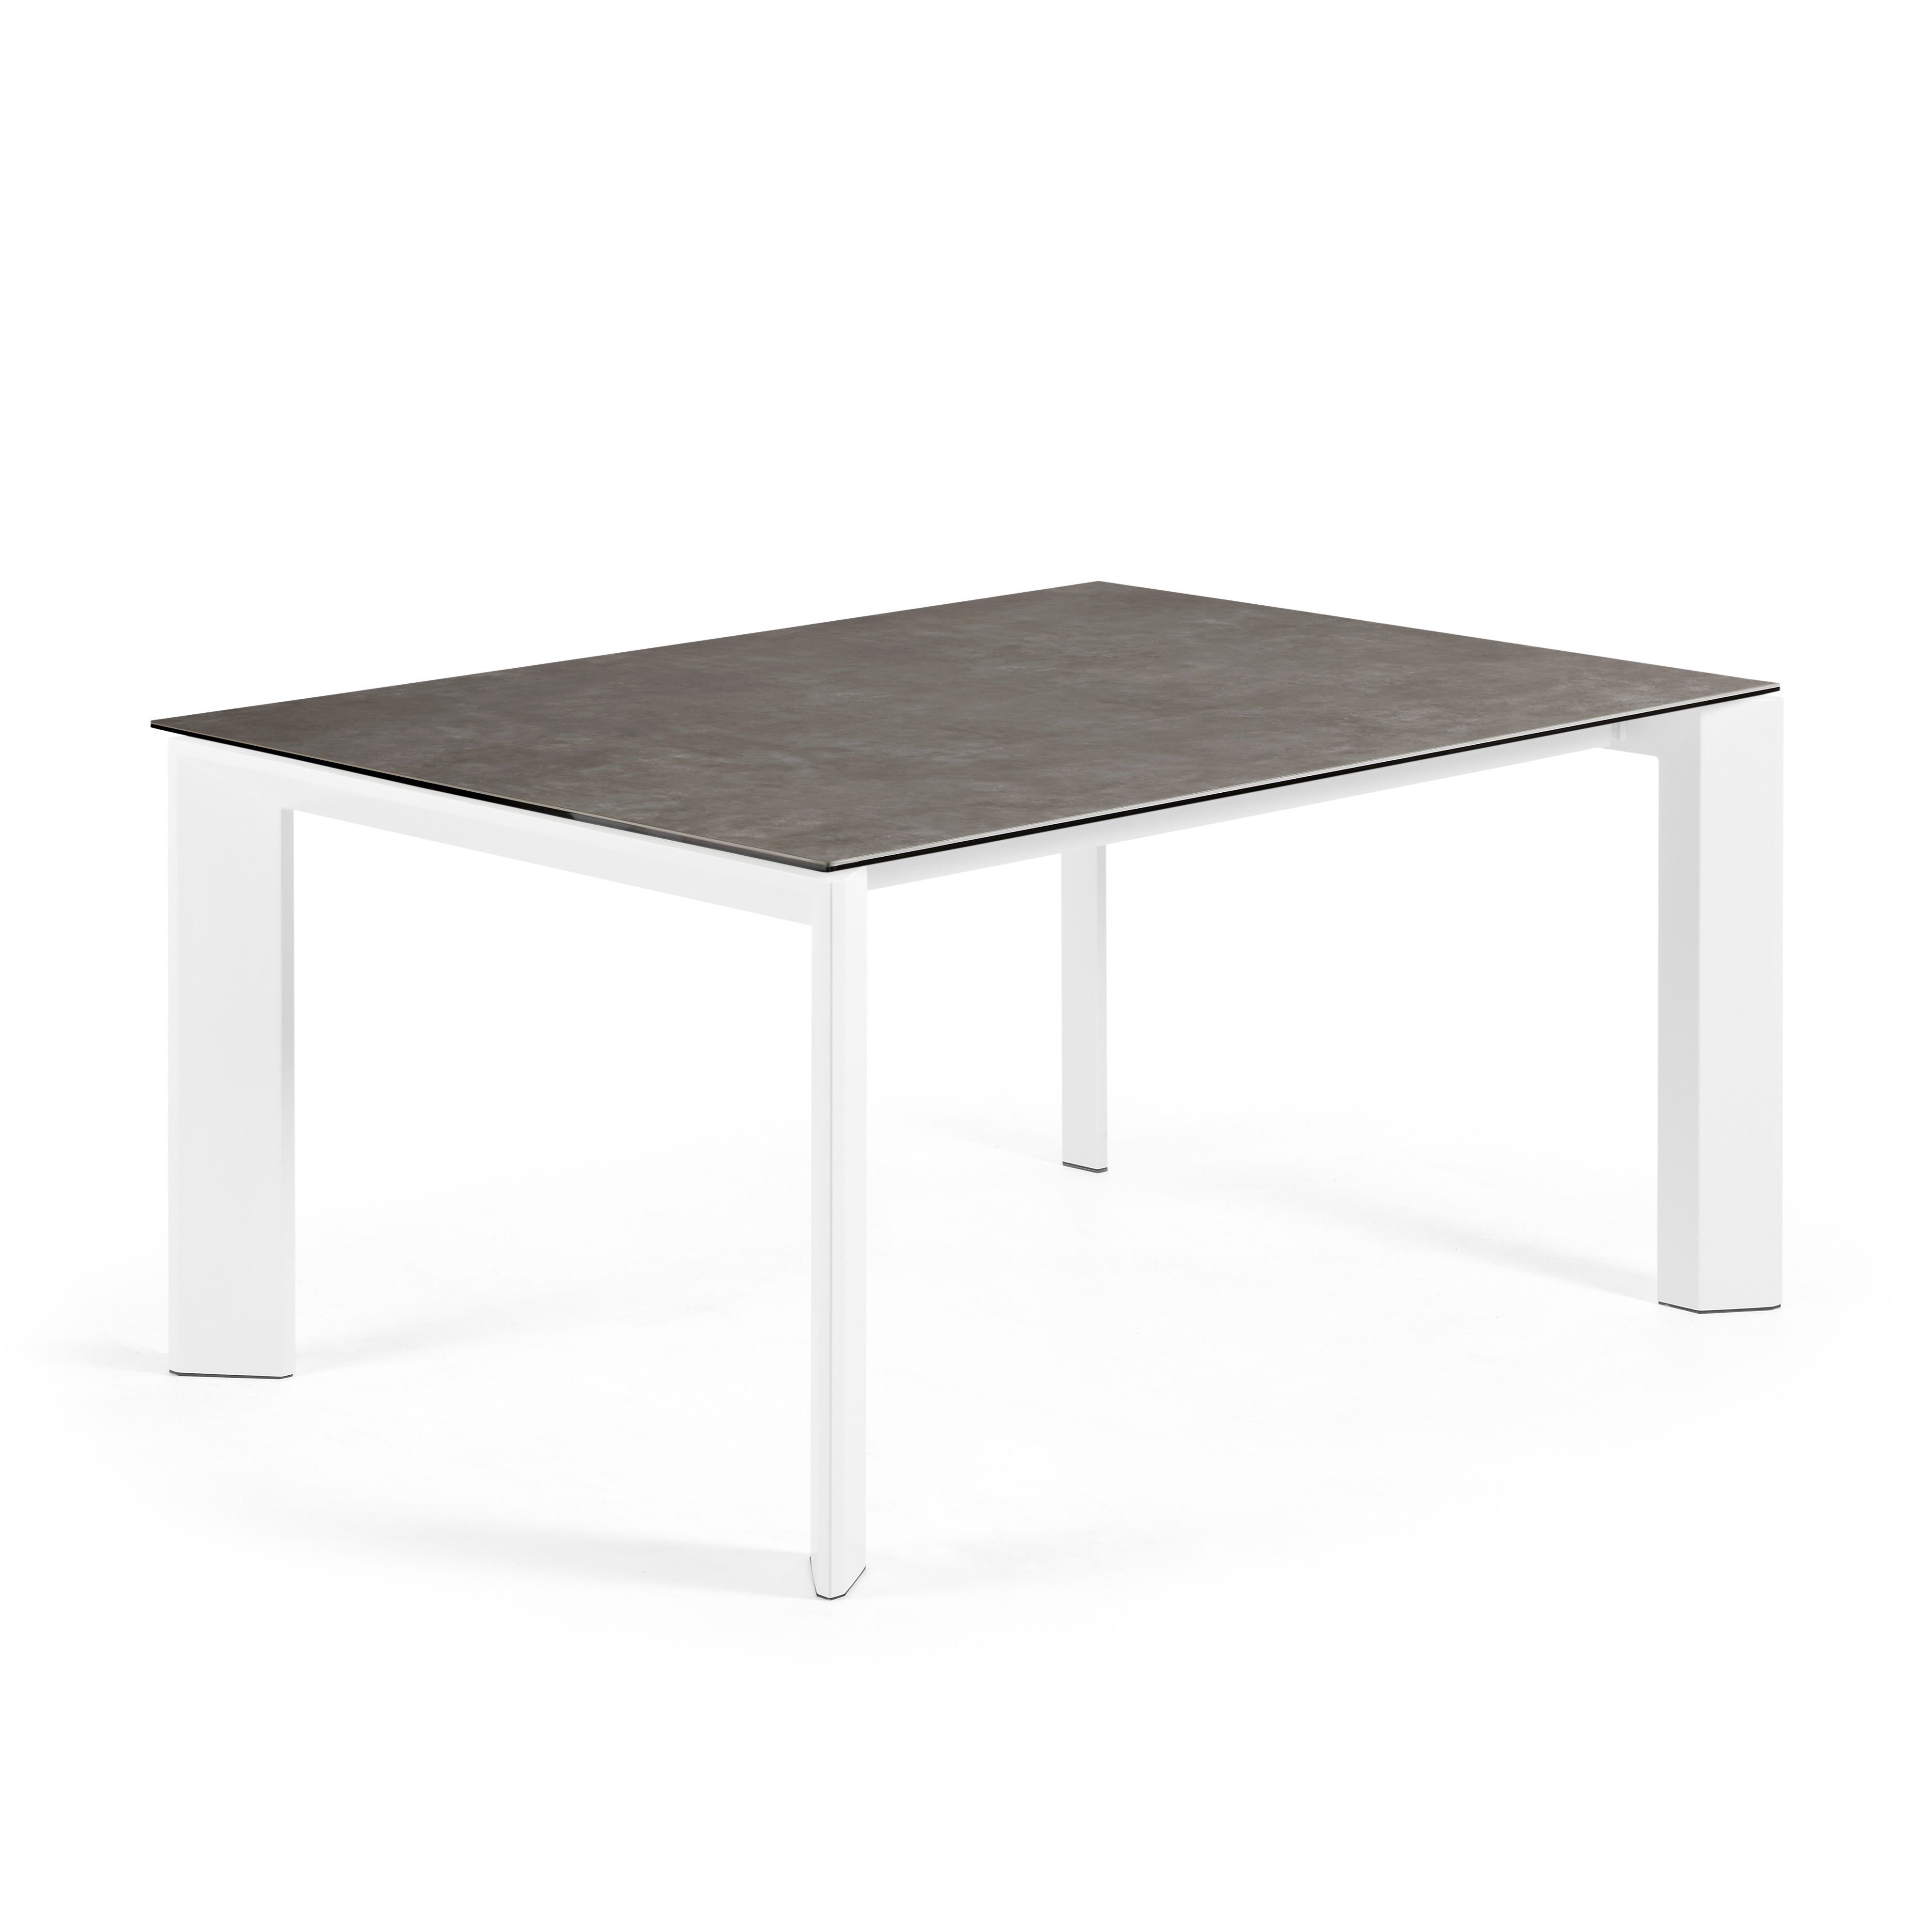 Axis kihúzható kerámia asztal Vulcano Ceniza befejezéssel, fehér acél lábakkal 160 (220) cm